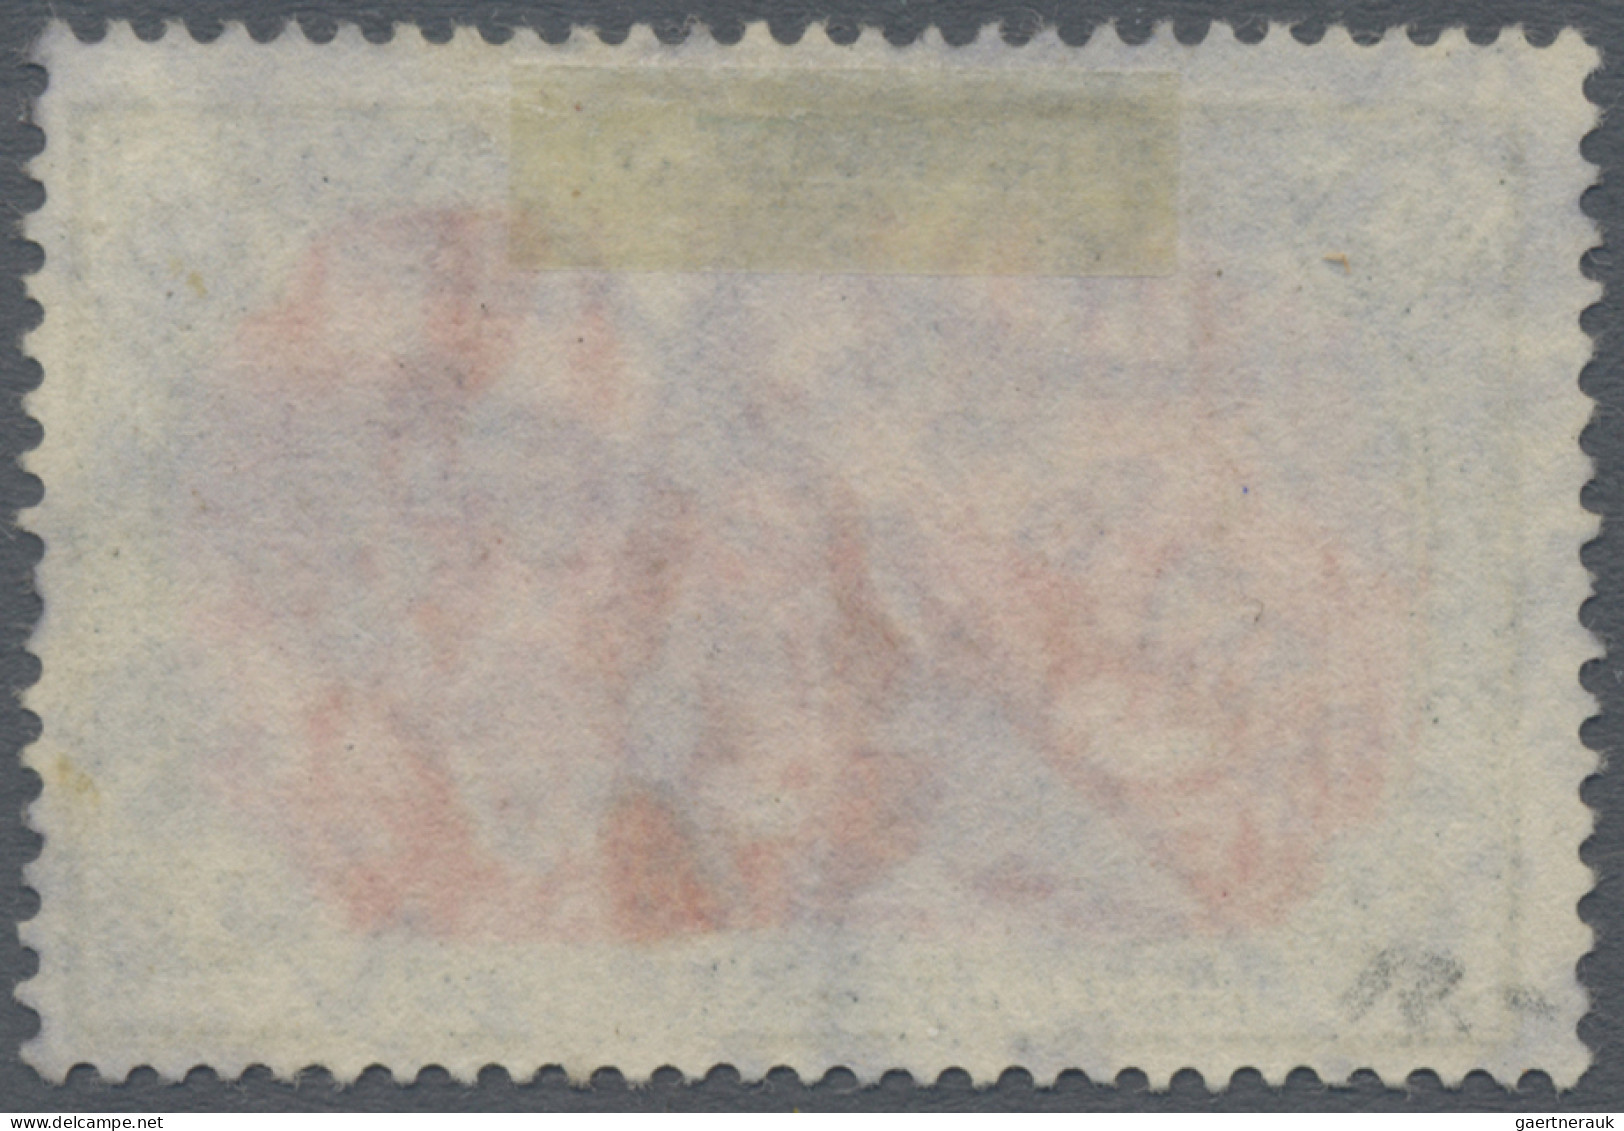 Deutsches Reich - Germania: 1900, 5 M., Grünschwarz/bräunlichkarmin, Type I, Nac - Used Stamps